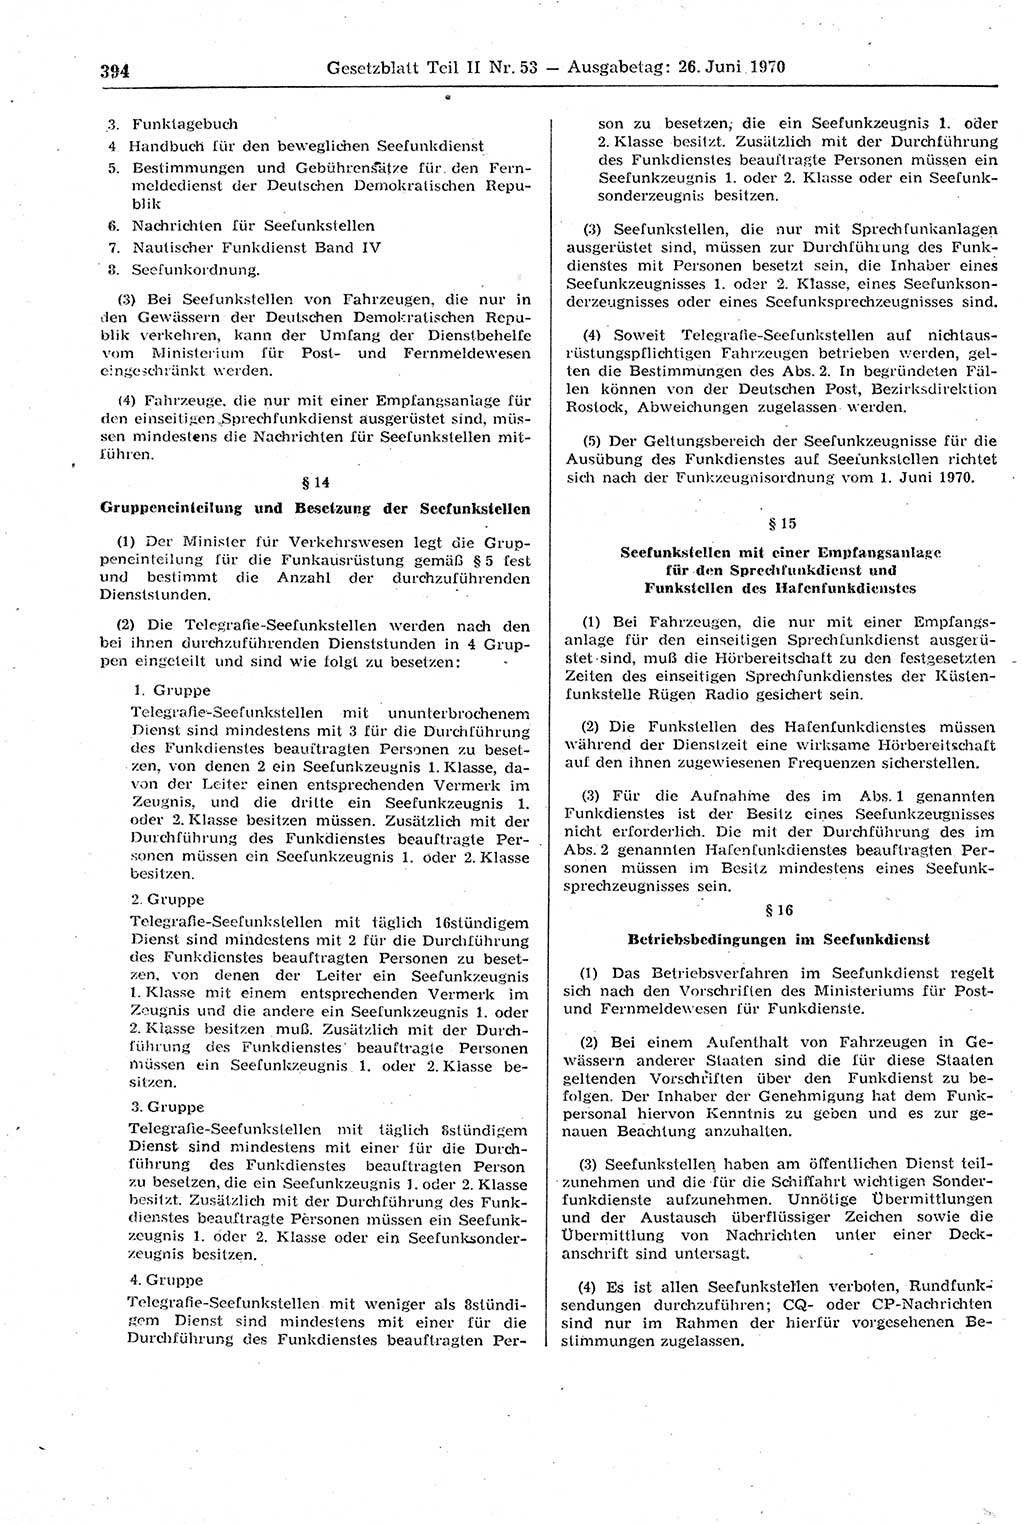 Gesetzblatt (GBl.) der Deutschen Demokratischen Republik (DDR) Teil ⅠⅠ 1970, Seite 394 (GBl. DDR ⅠⅠ 1970, S. 394)